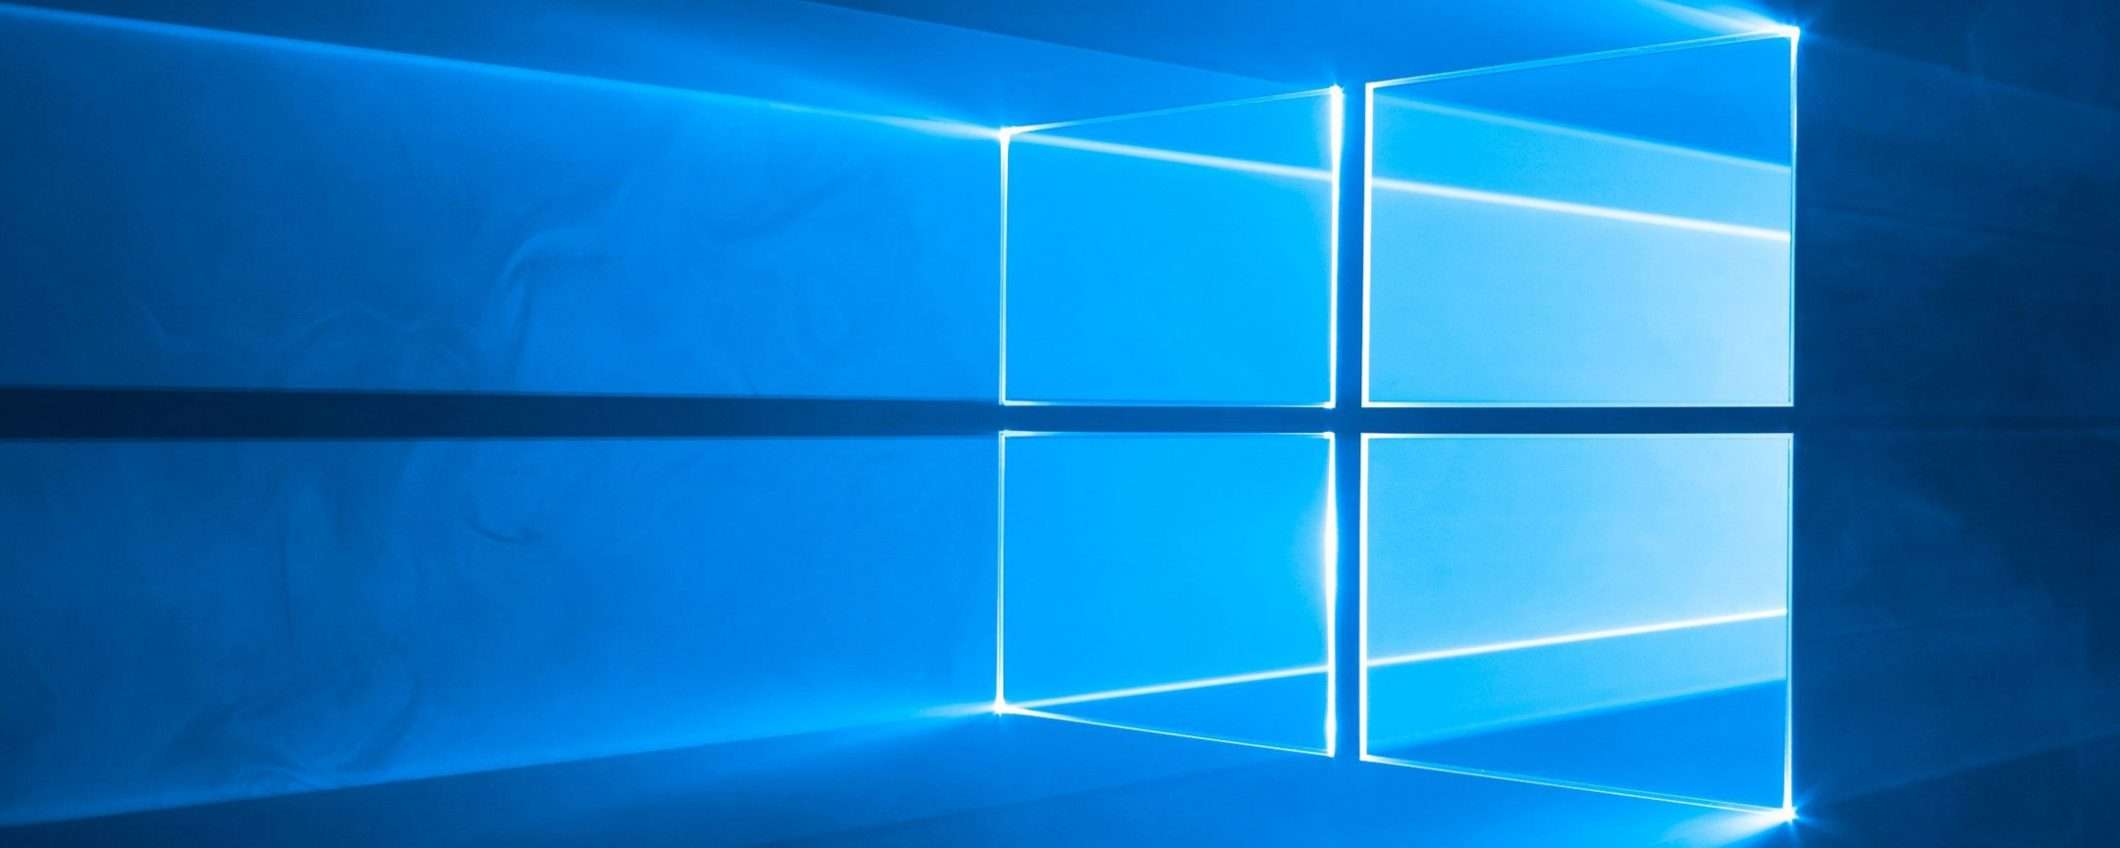 Microsoft forza il controllo integrità su Windows 10